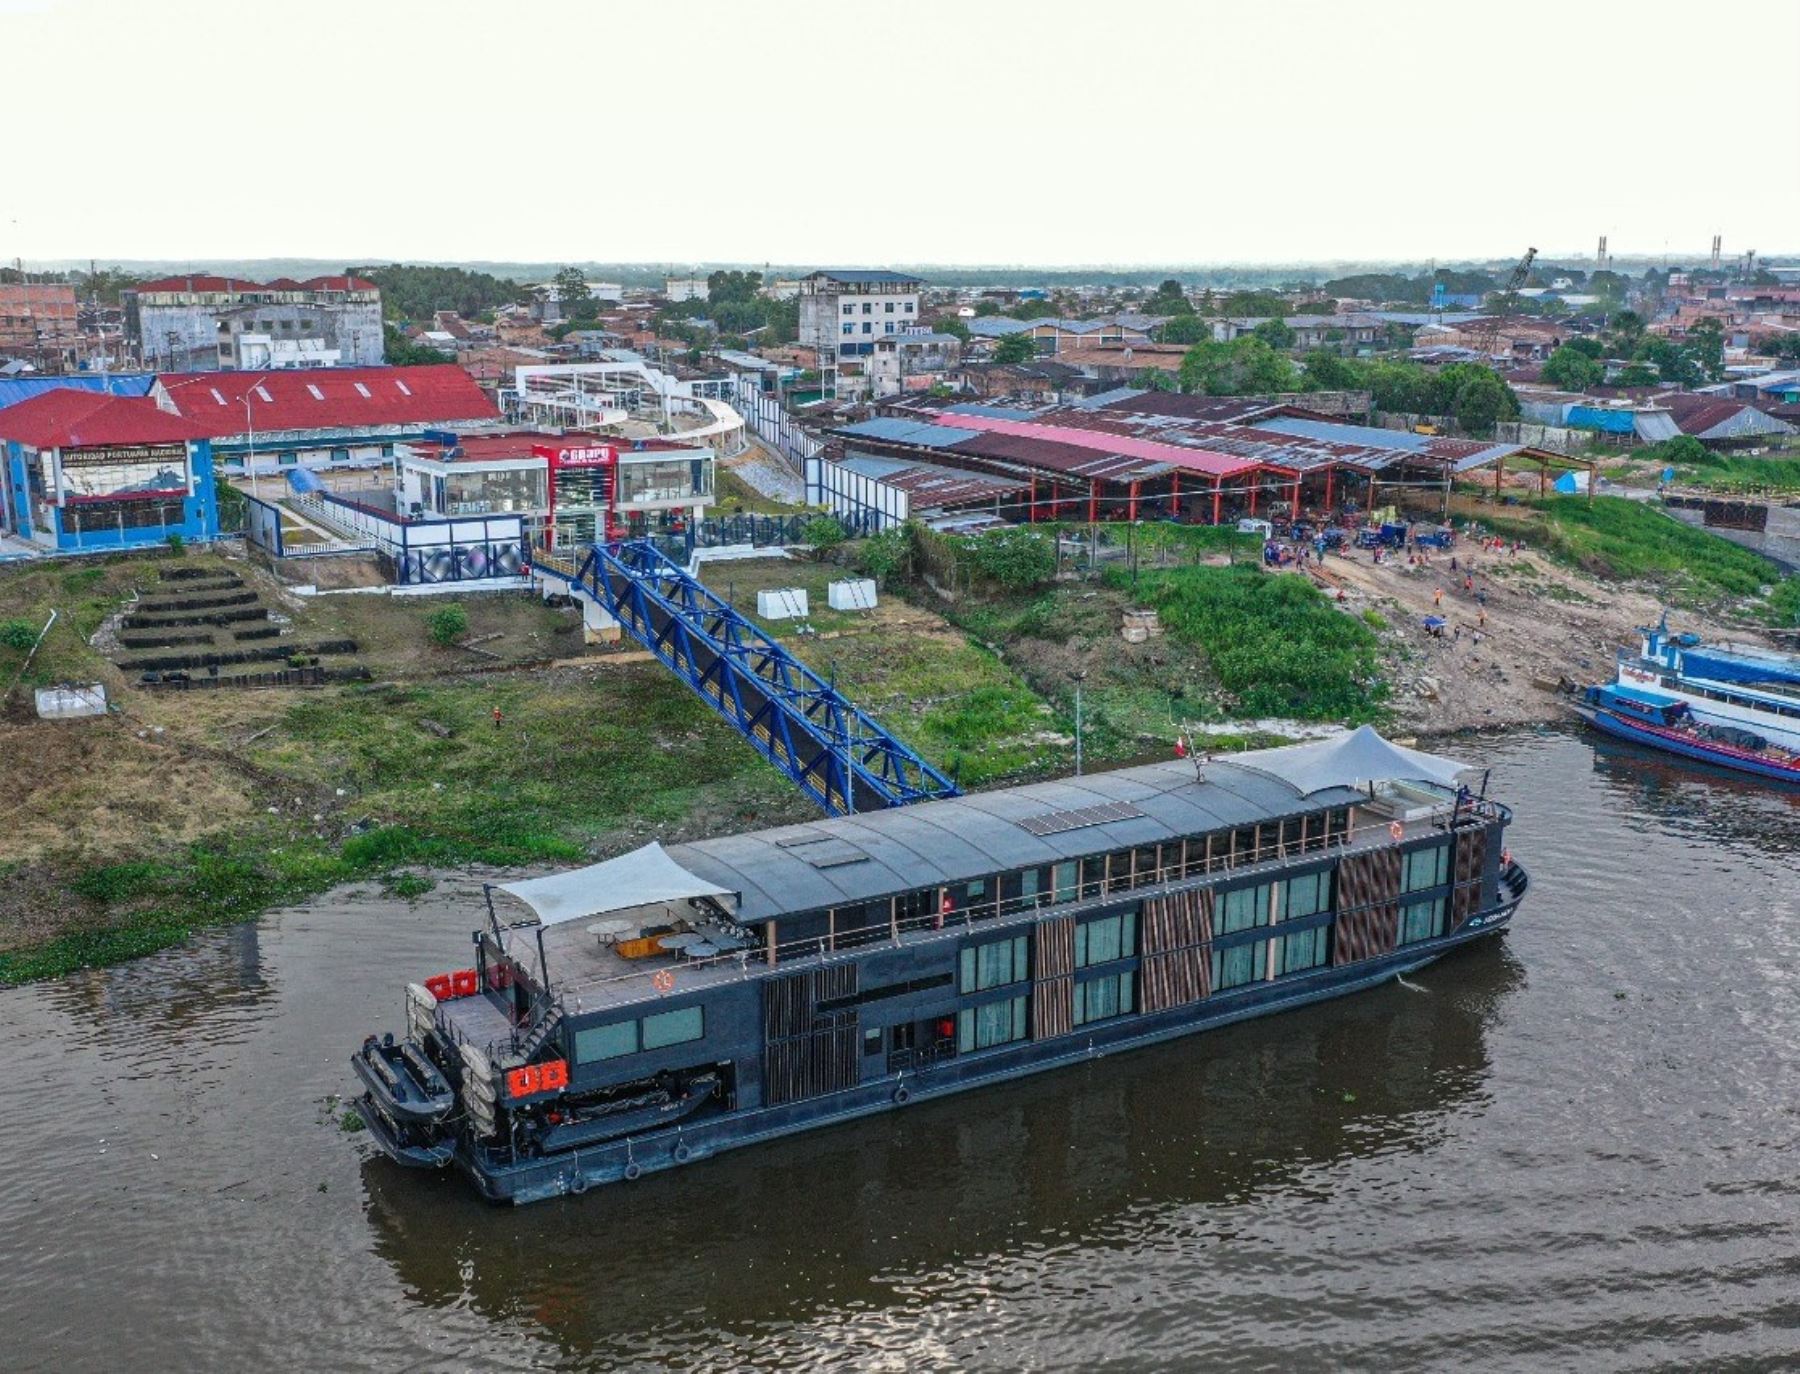 Entró en operaciones el nuevo terminal fluvial de pasajeros de Iquitos. La obra beneficiará a más de 346,000 ciudadanos de la región Loreto. ANDINA/Difusión